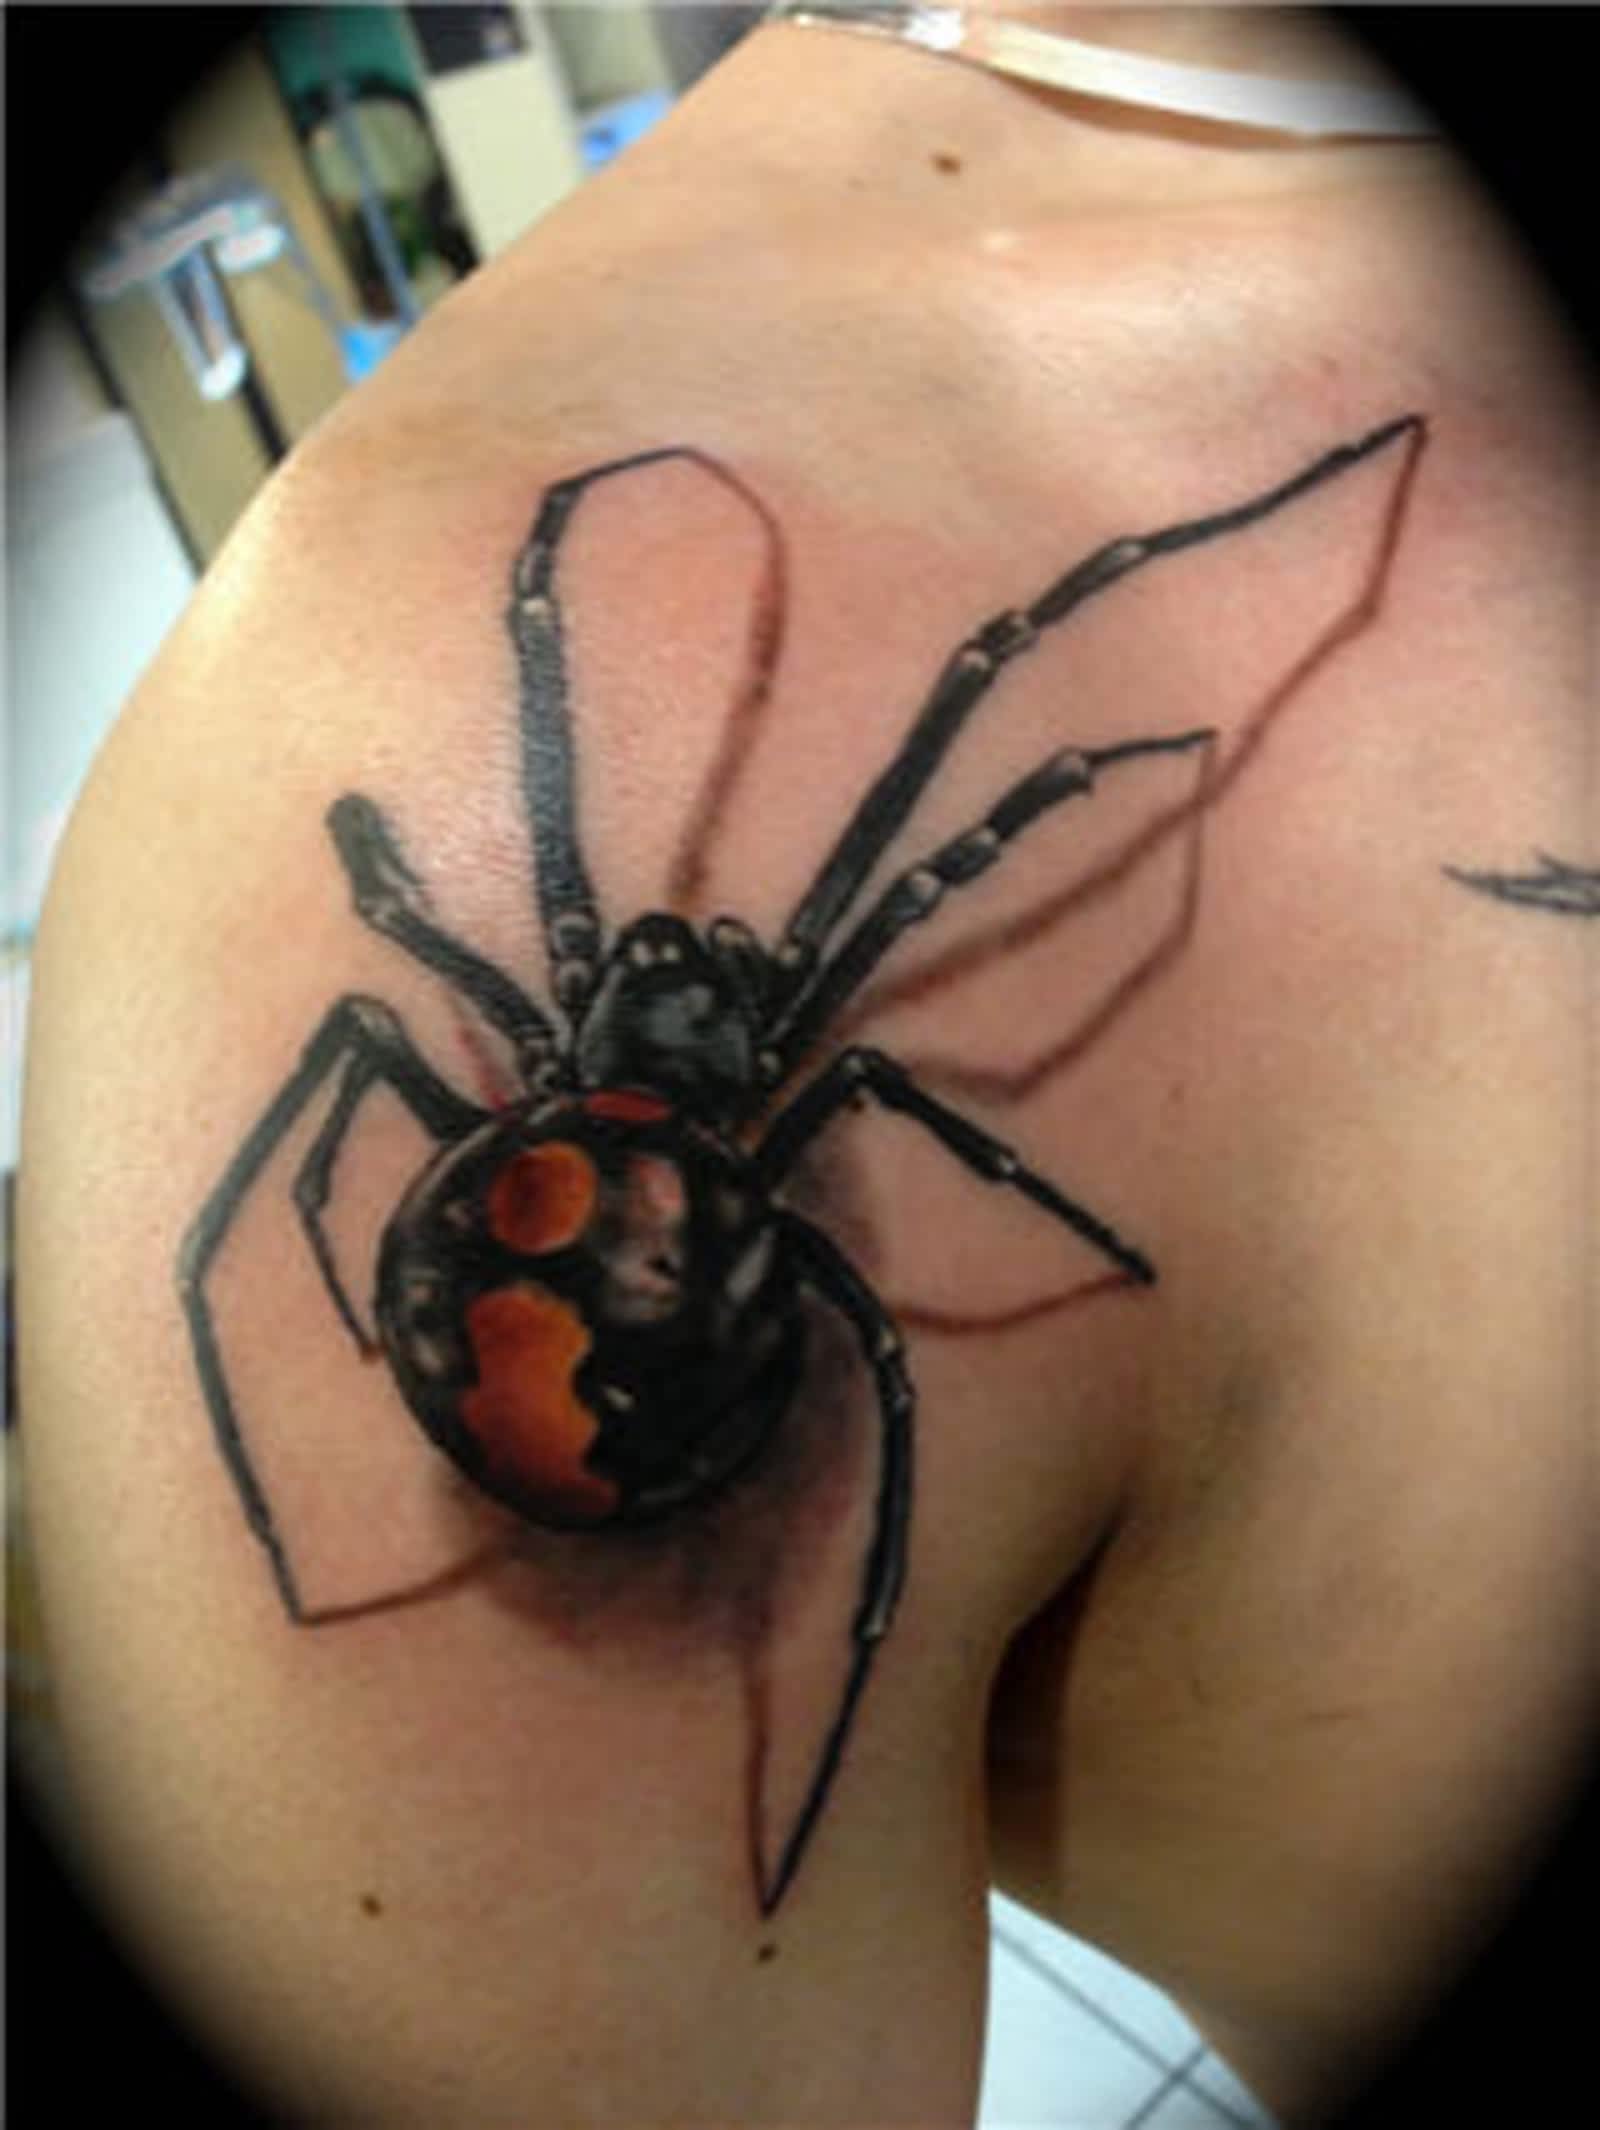 Wow black widow spider TIFU by